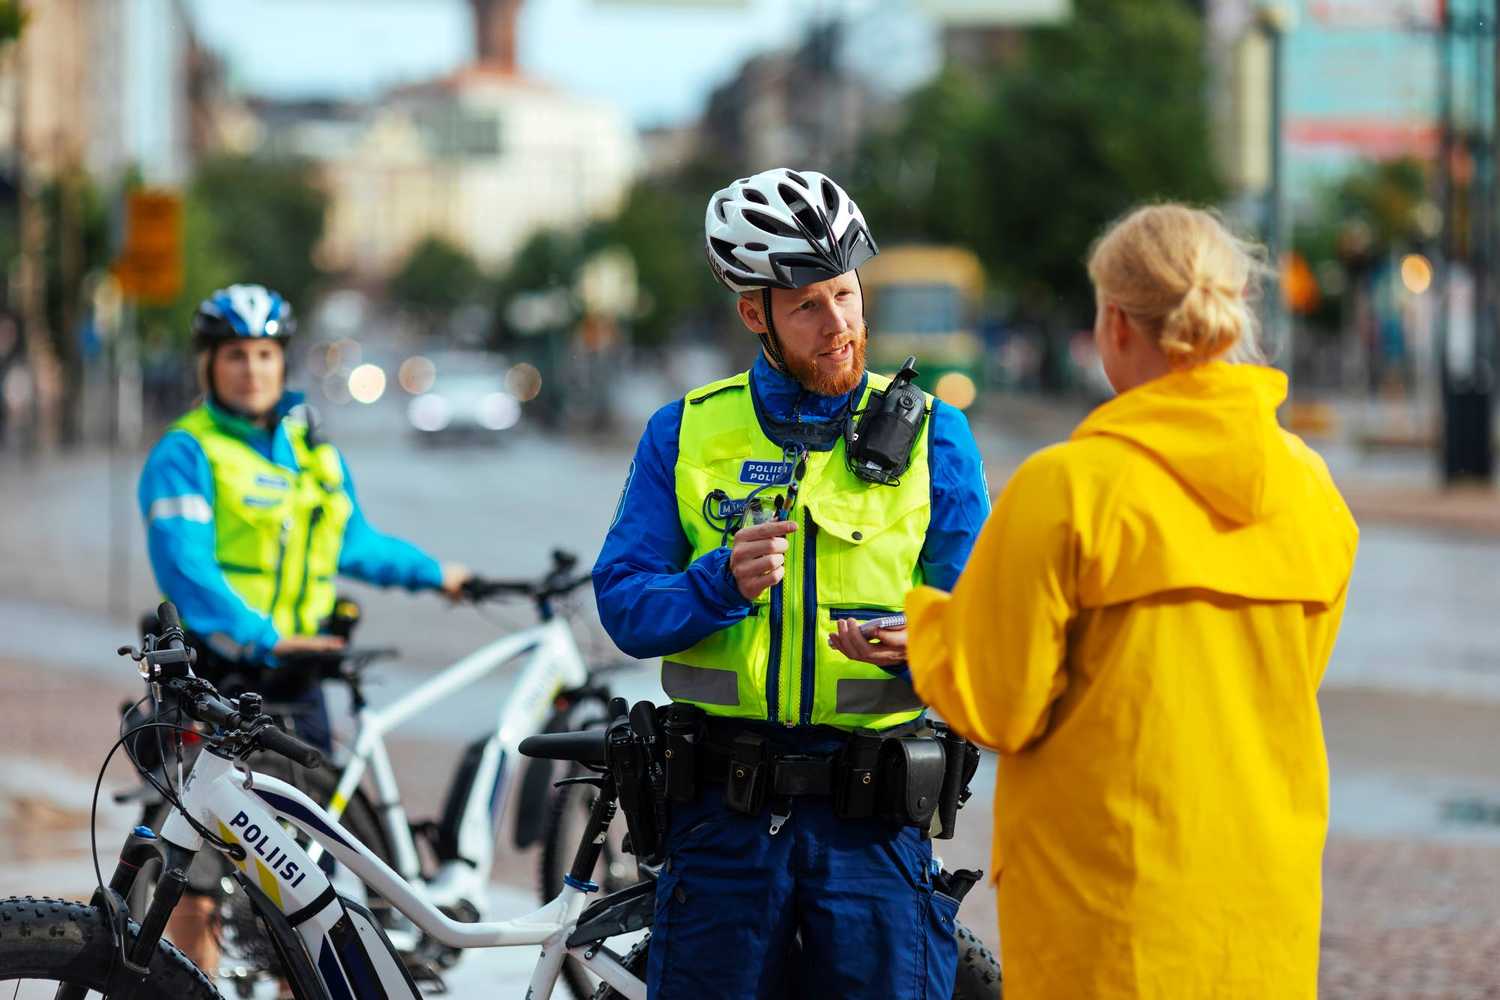 Polkupyöräpoliisi puhuttaa keltaiseen takkiin pukeutunutta asiakasta. Poliisilla on kädessään kynä ja lehtiö. Taustalla toinen poliisi nojaa pyöräänsä.